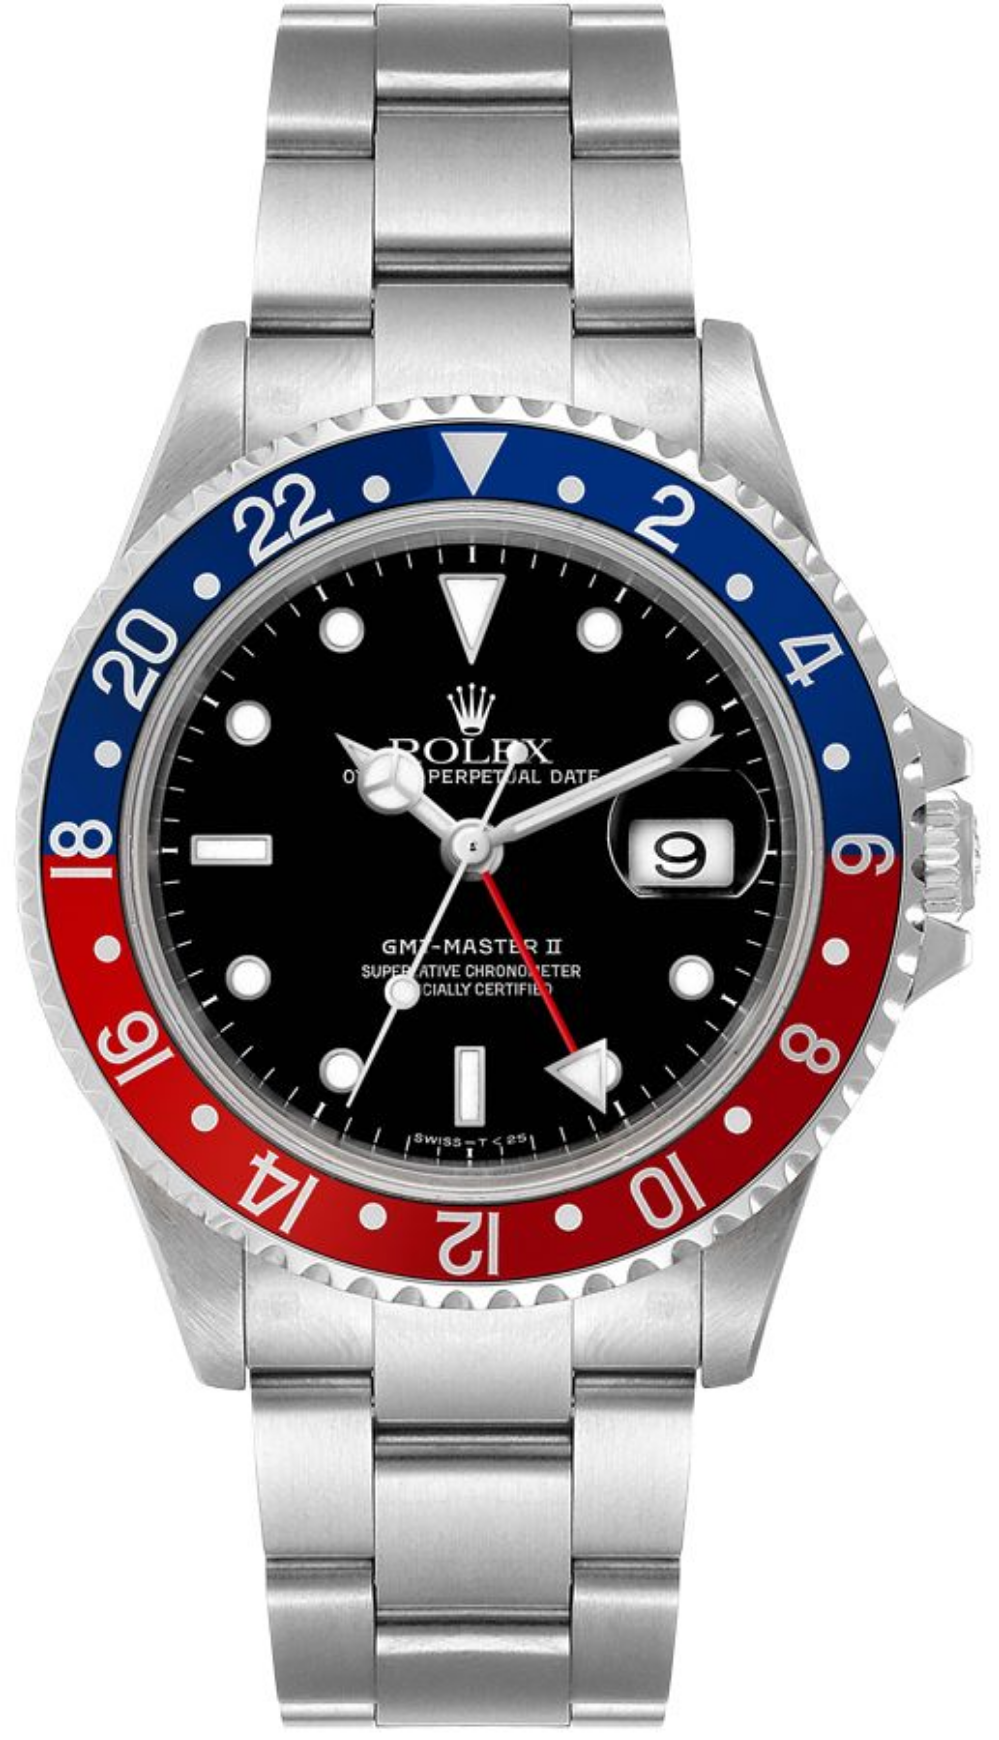 Rolex GMT Master II “Pepsi” (Ref 16710) – Watches